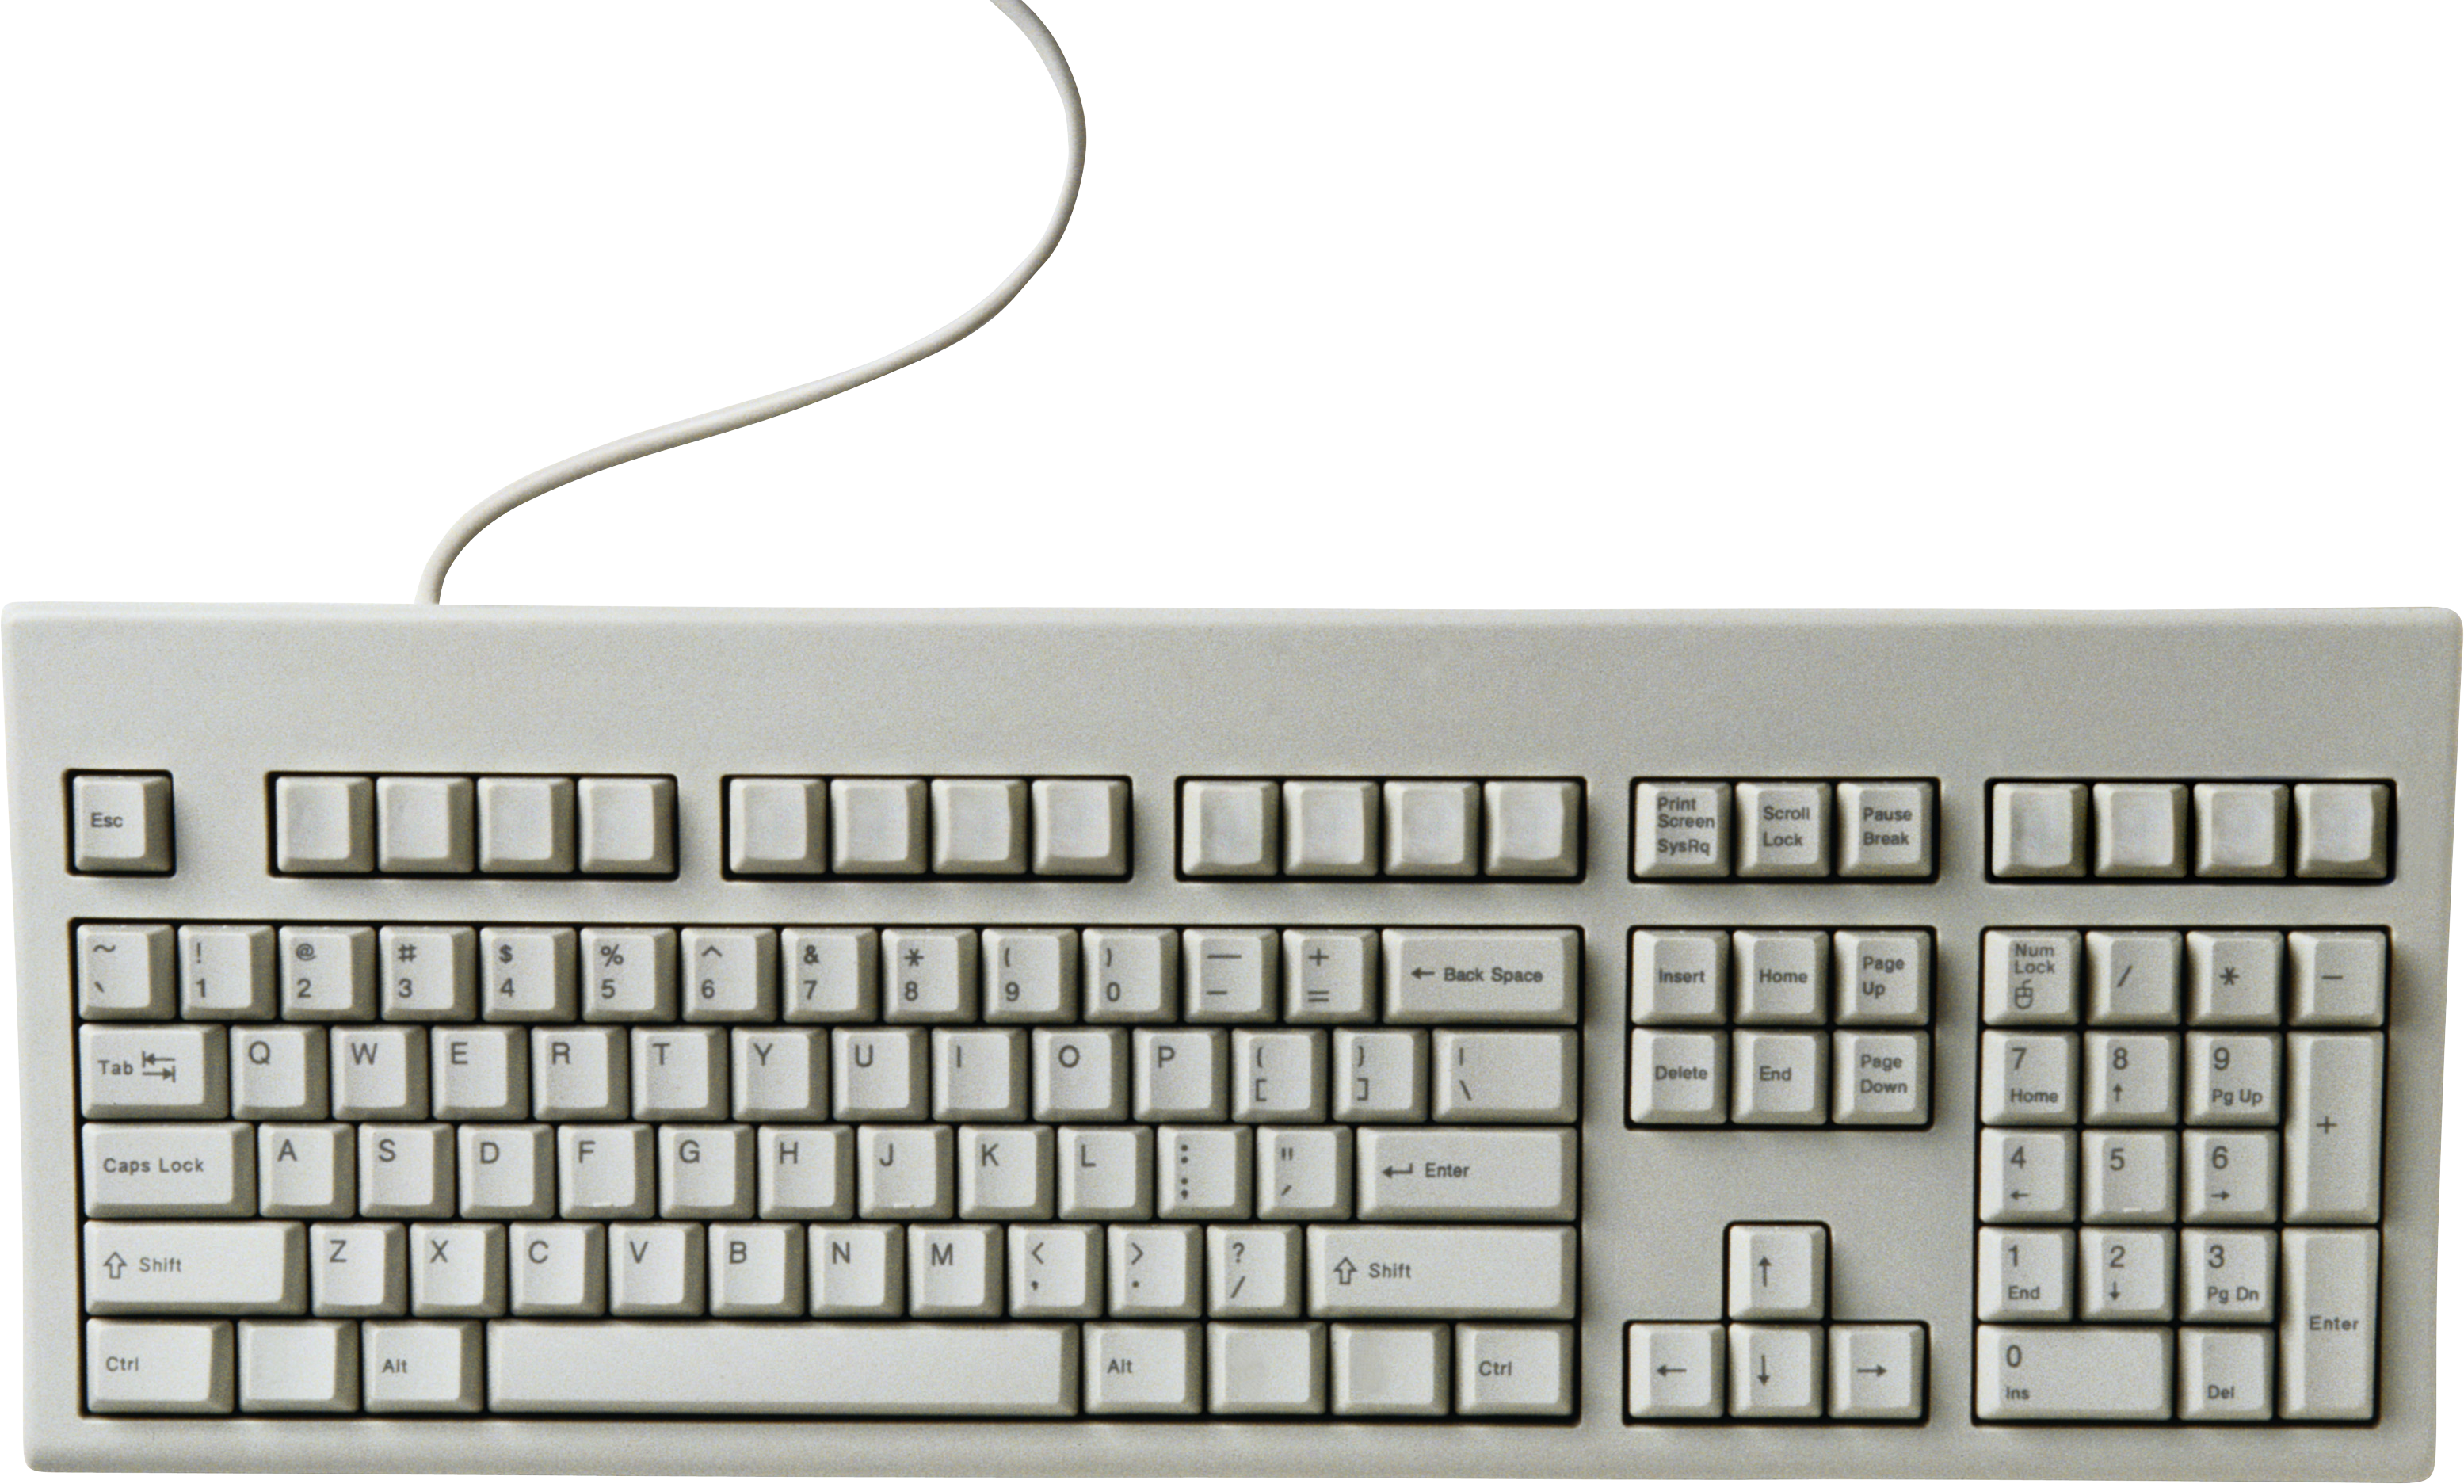 Keyboard PNG image